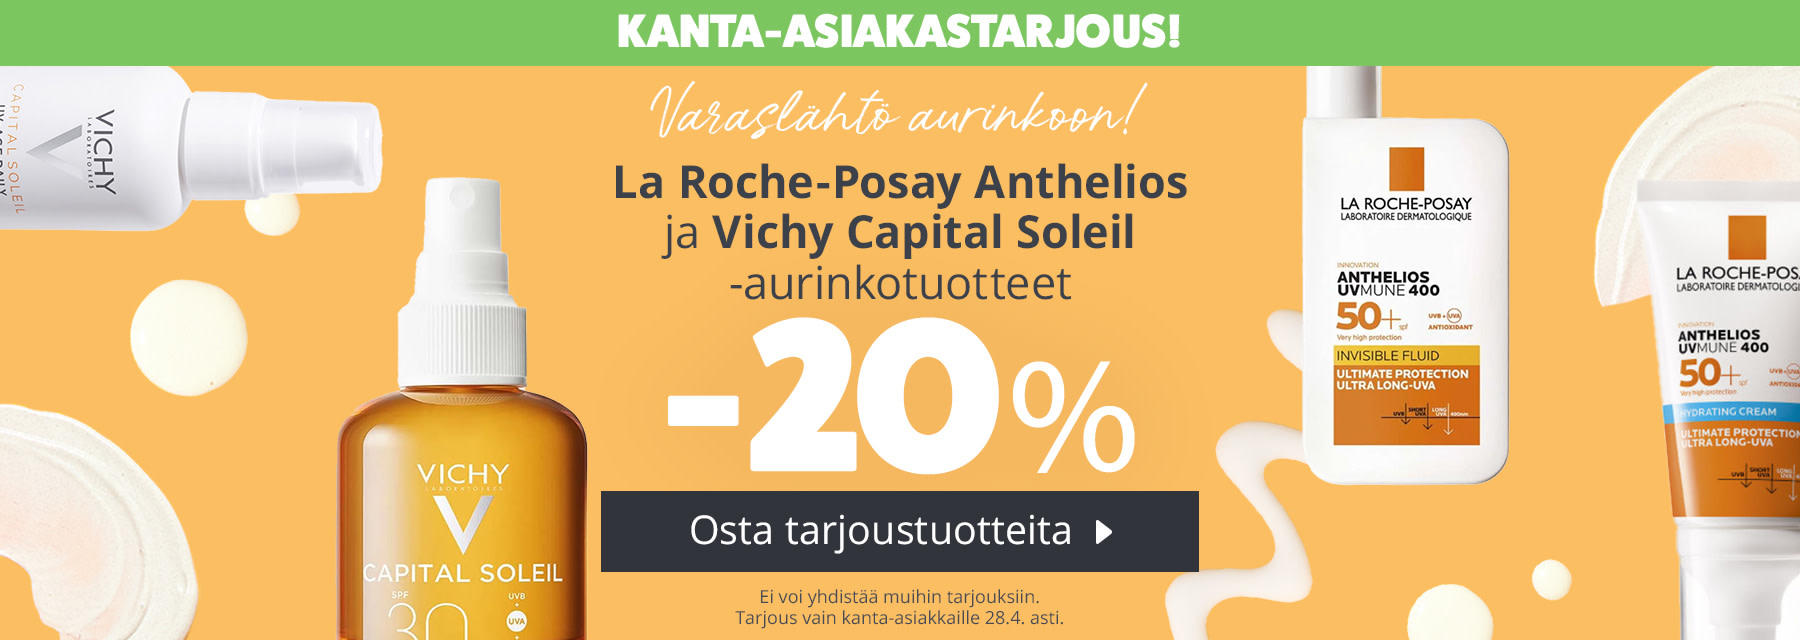 Varaslähtö aurinkoon | La Roche-Posay ja Vichy -aurinkotuotteet -20 %